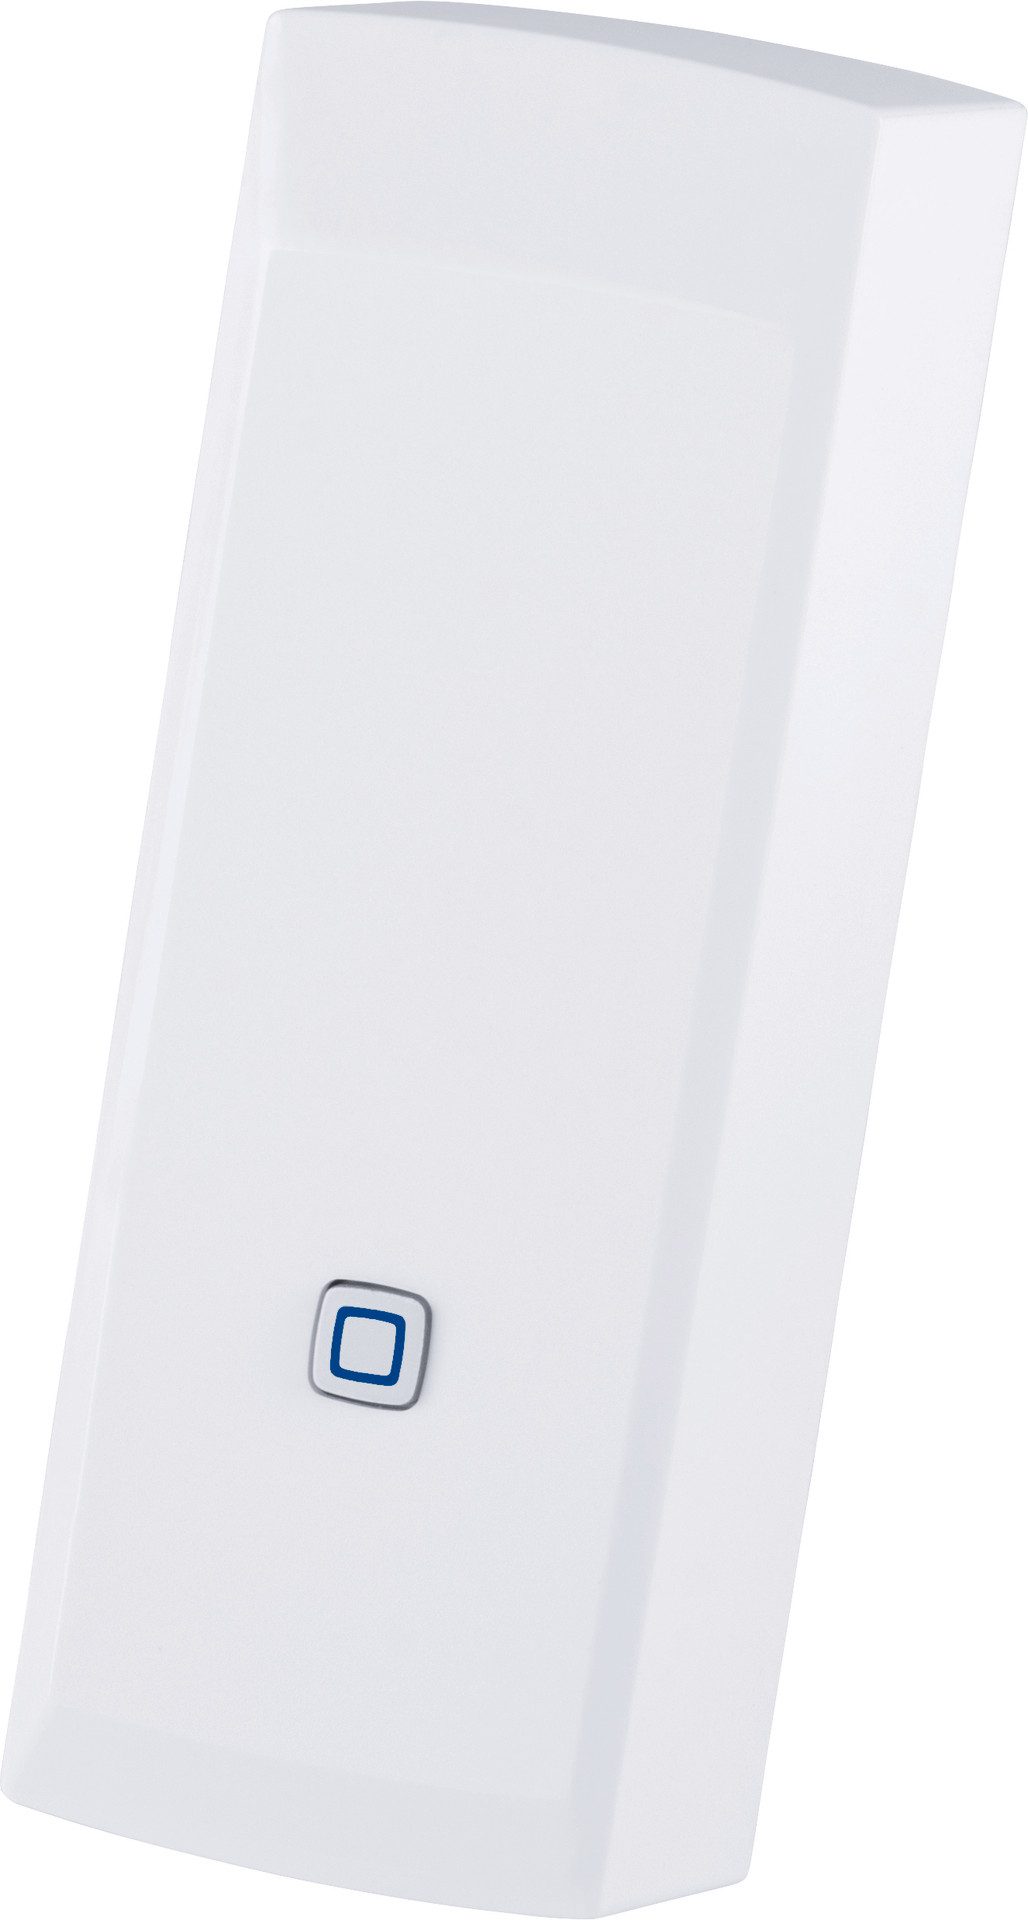 Homematic IP Schnittstelle für Gaszähler Smart-Home-Zubehör